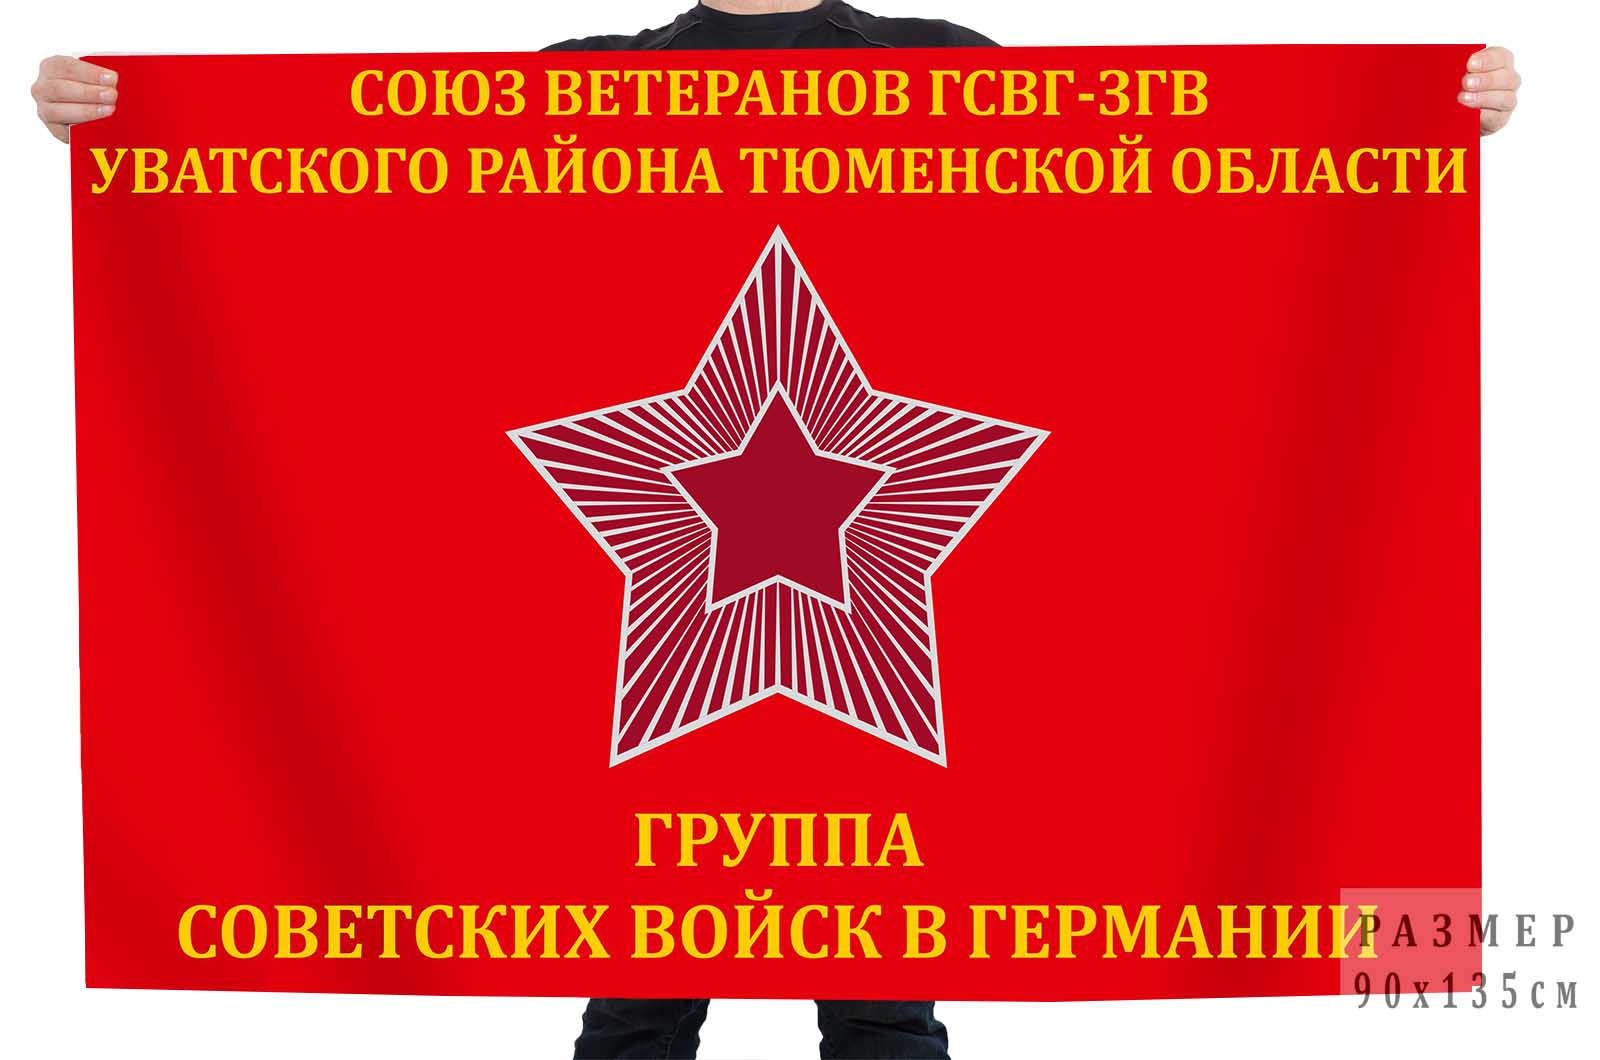 Купить флаг союза ветеранов ГСВГ Уватского района Тюменской области